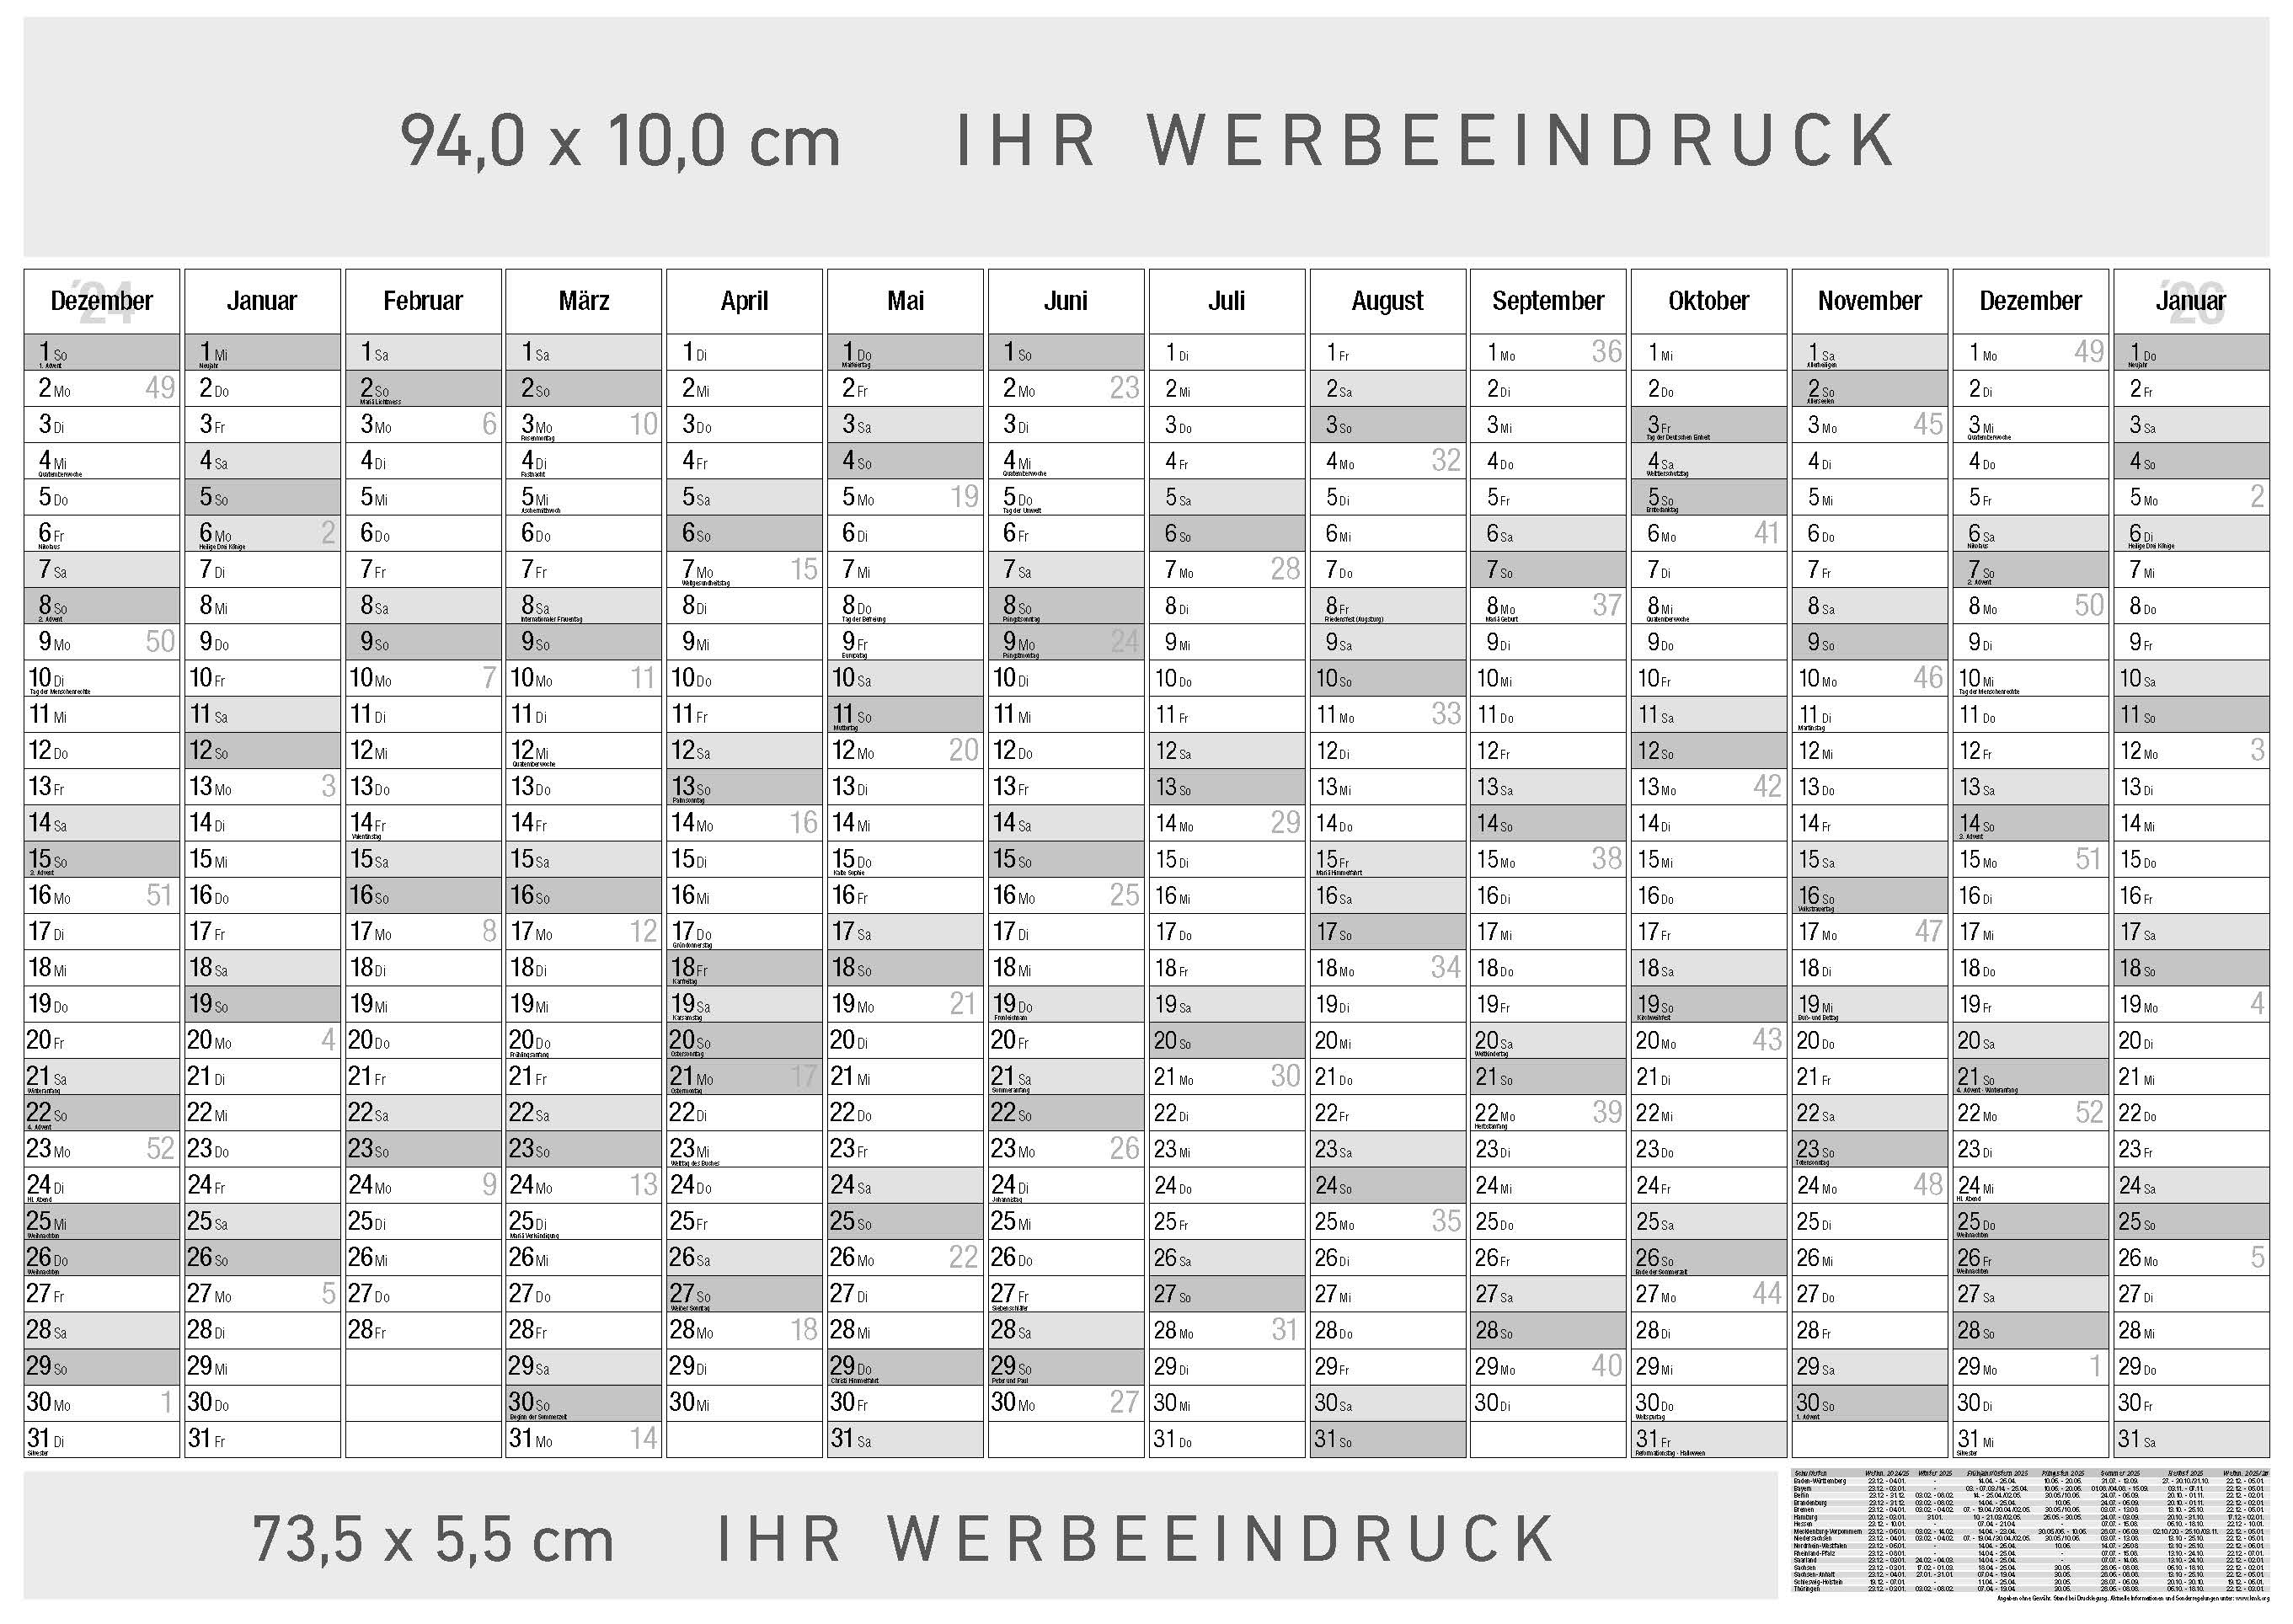 Jahresplaner Tegernsee
14 Monate schwarz/grau
Deutsch - 3-sprachig DE-AT-CH